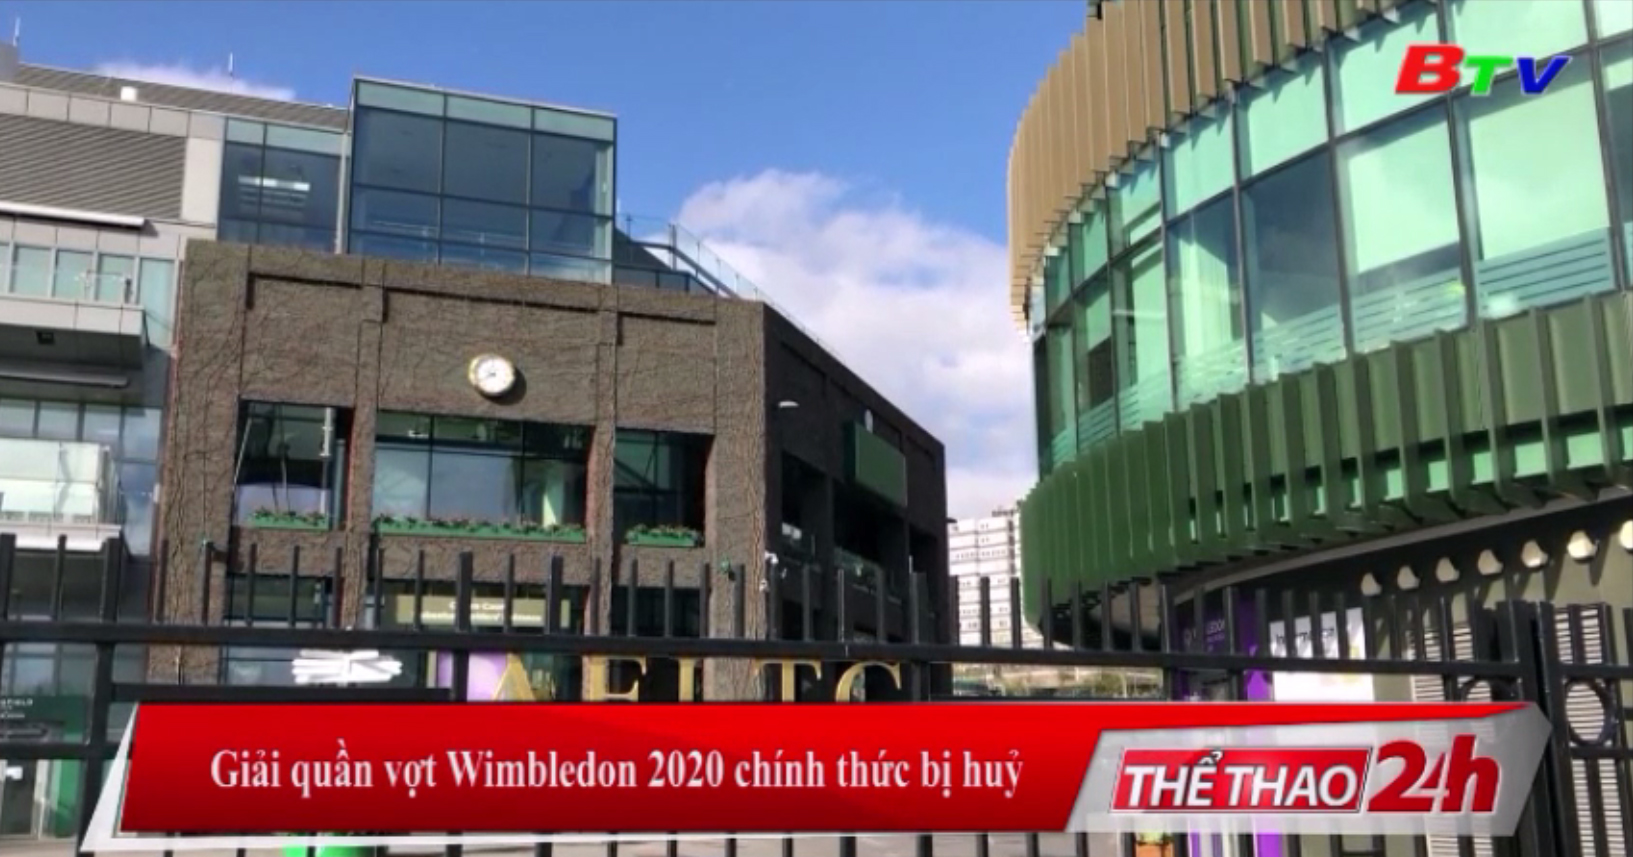 Giải quần vợt Wimbledon 2020 chính thức bị hủy